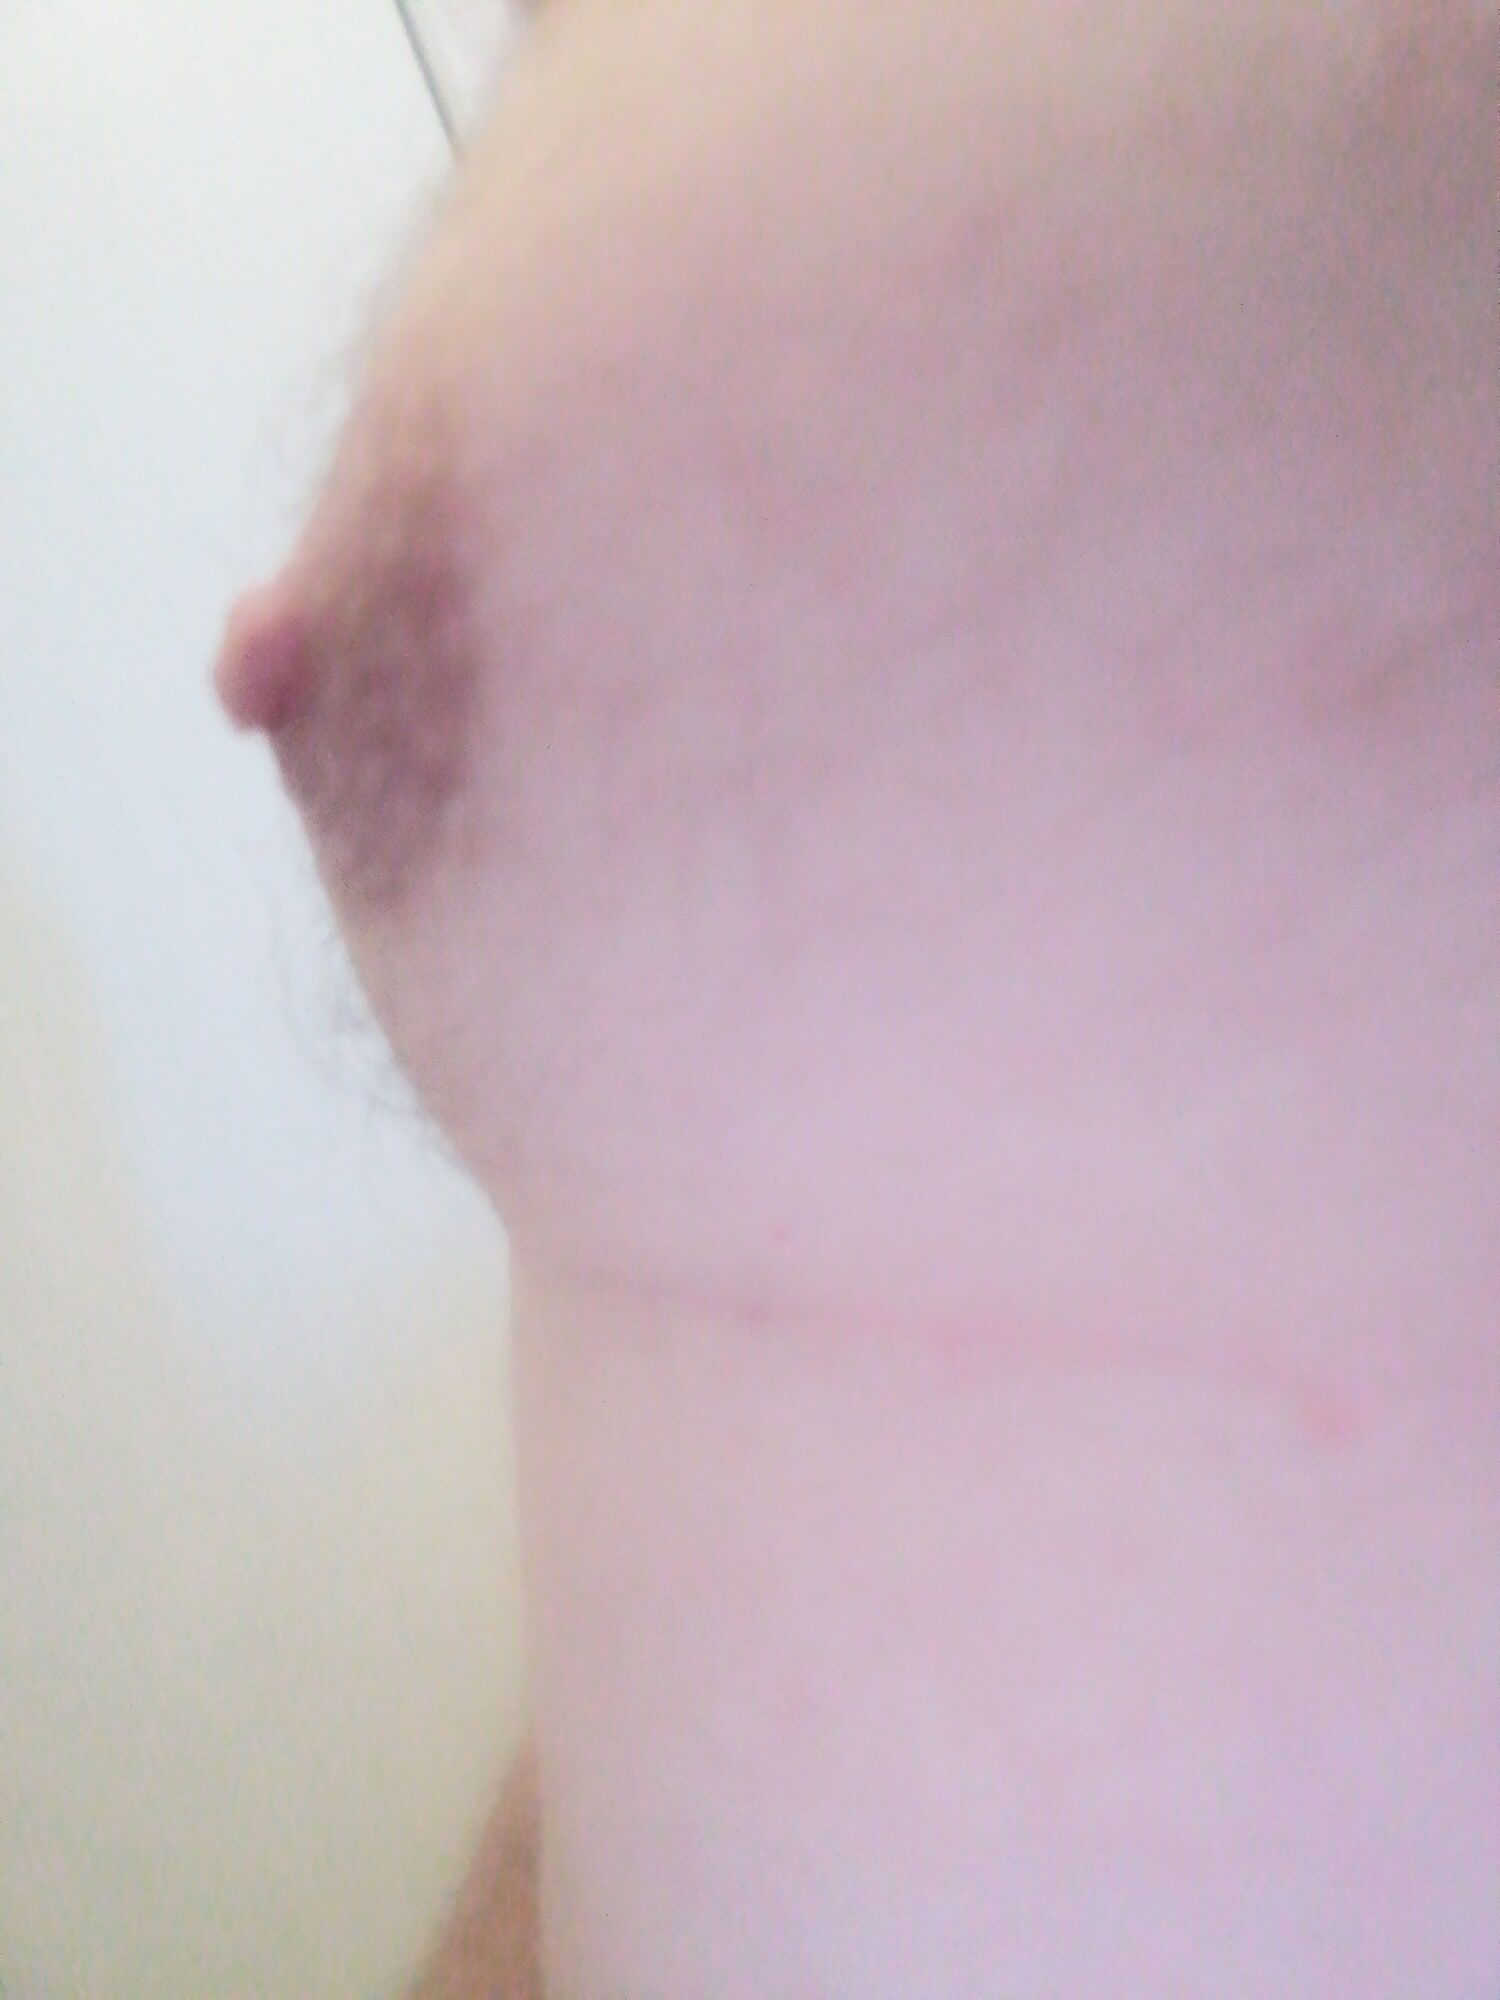 My tits